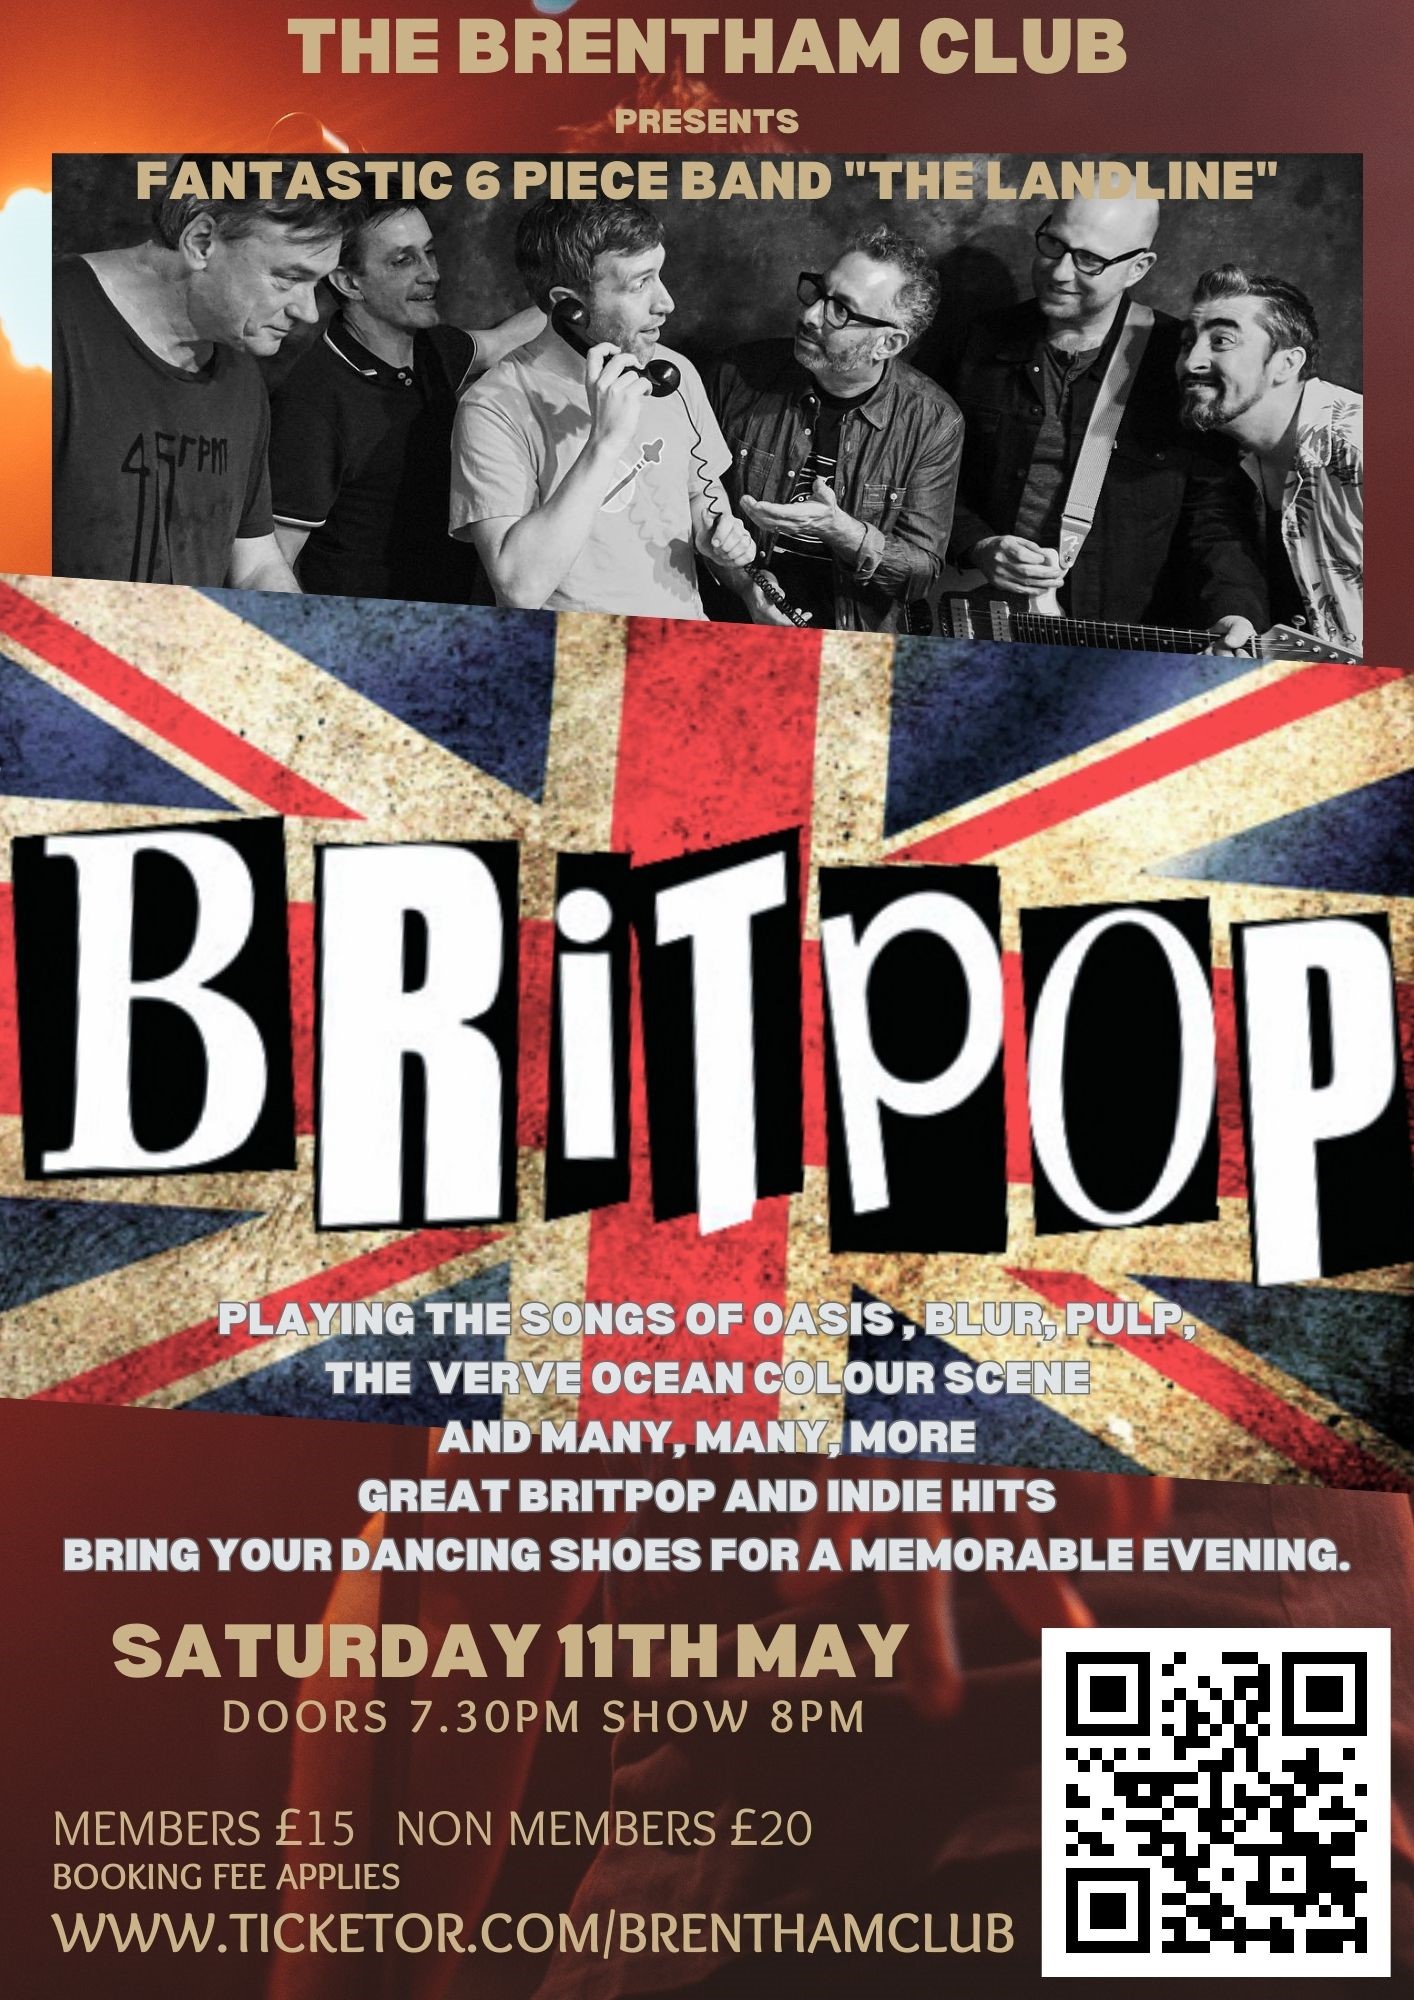 BRITPOP Concert The Landline on may. 11, 20:00@The Brentham Club - Compra entradas y obtén información enBrenthamclub.co.uk 